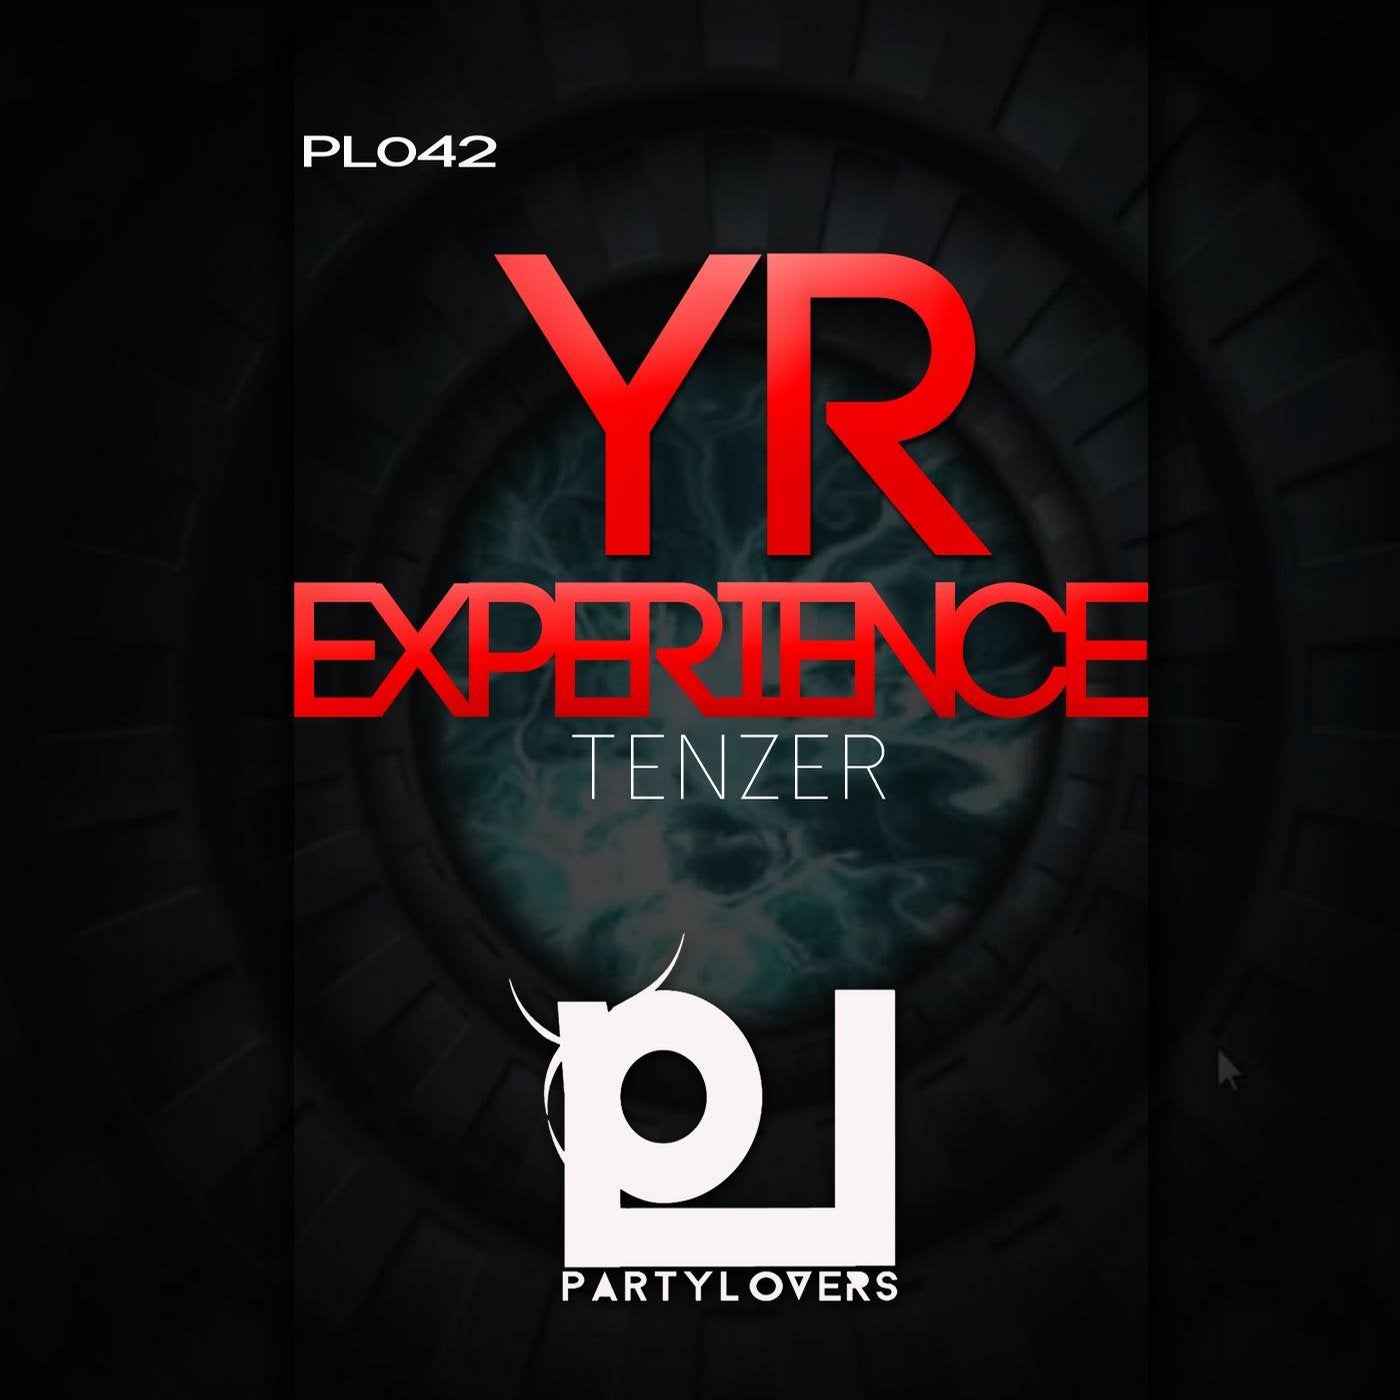 YR EXPERIENCE